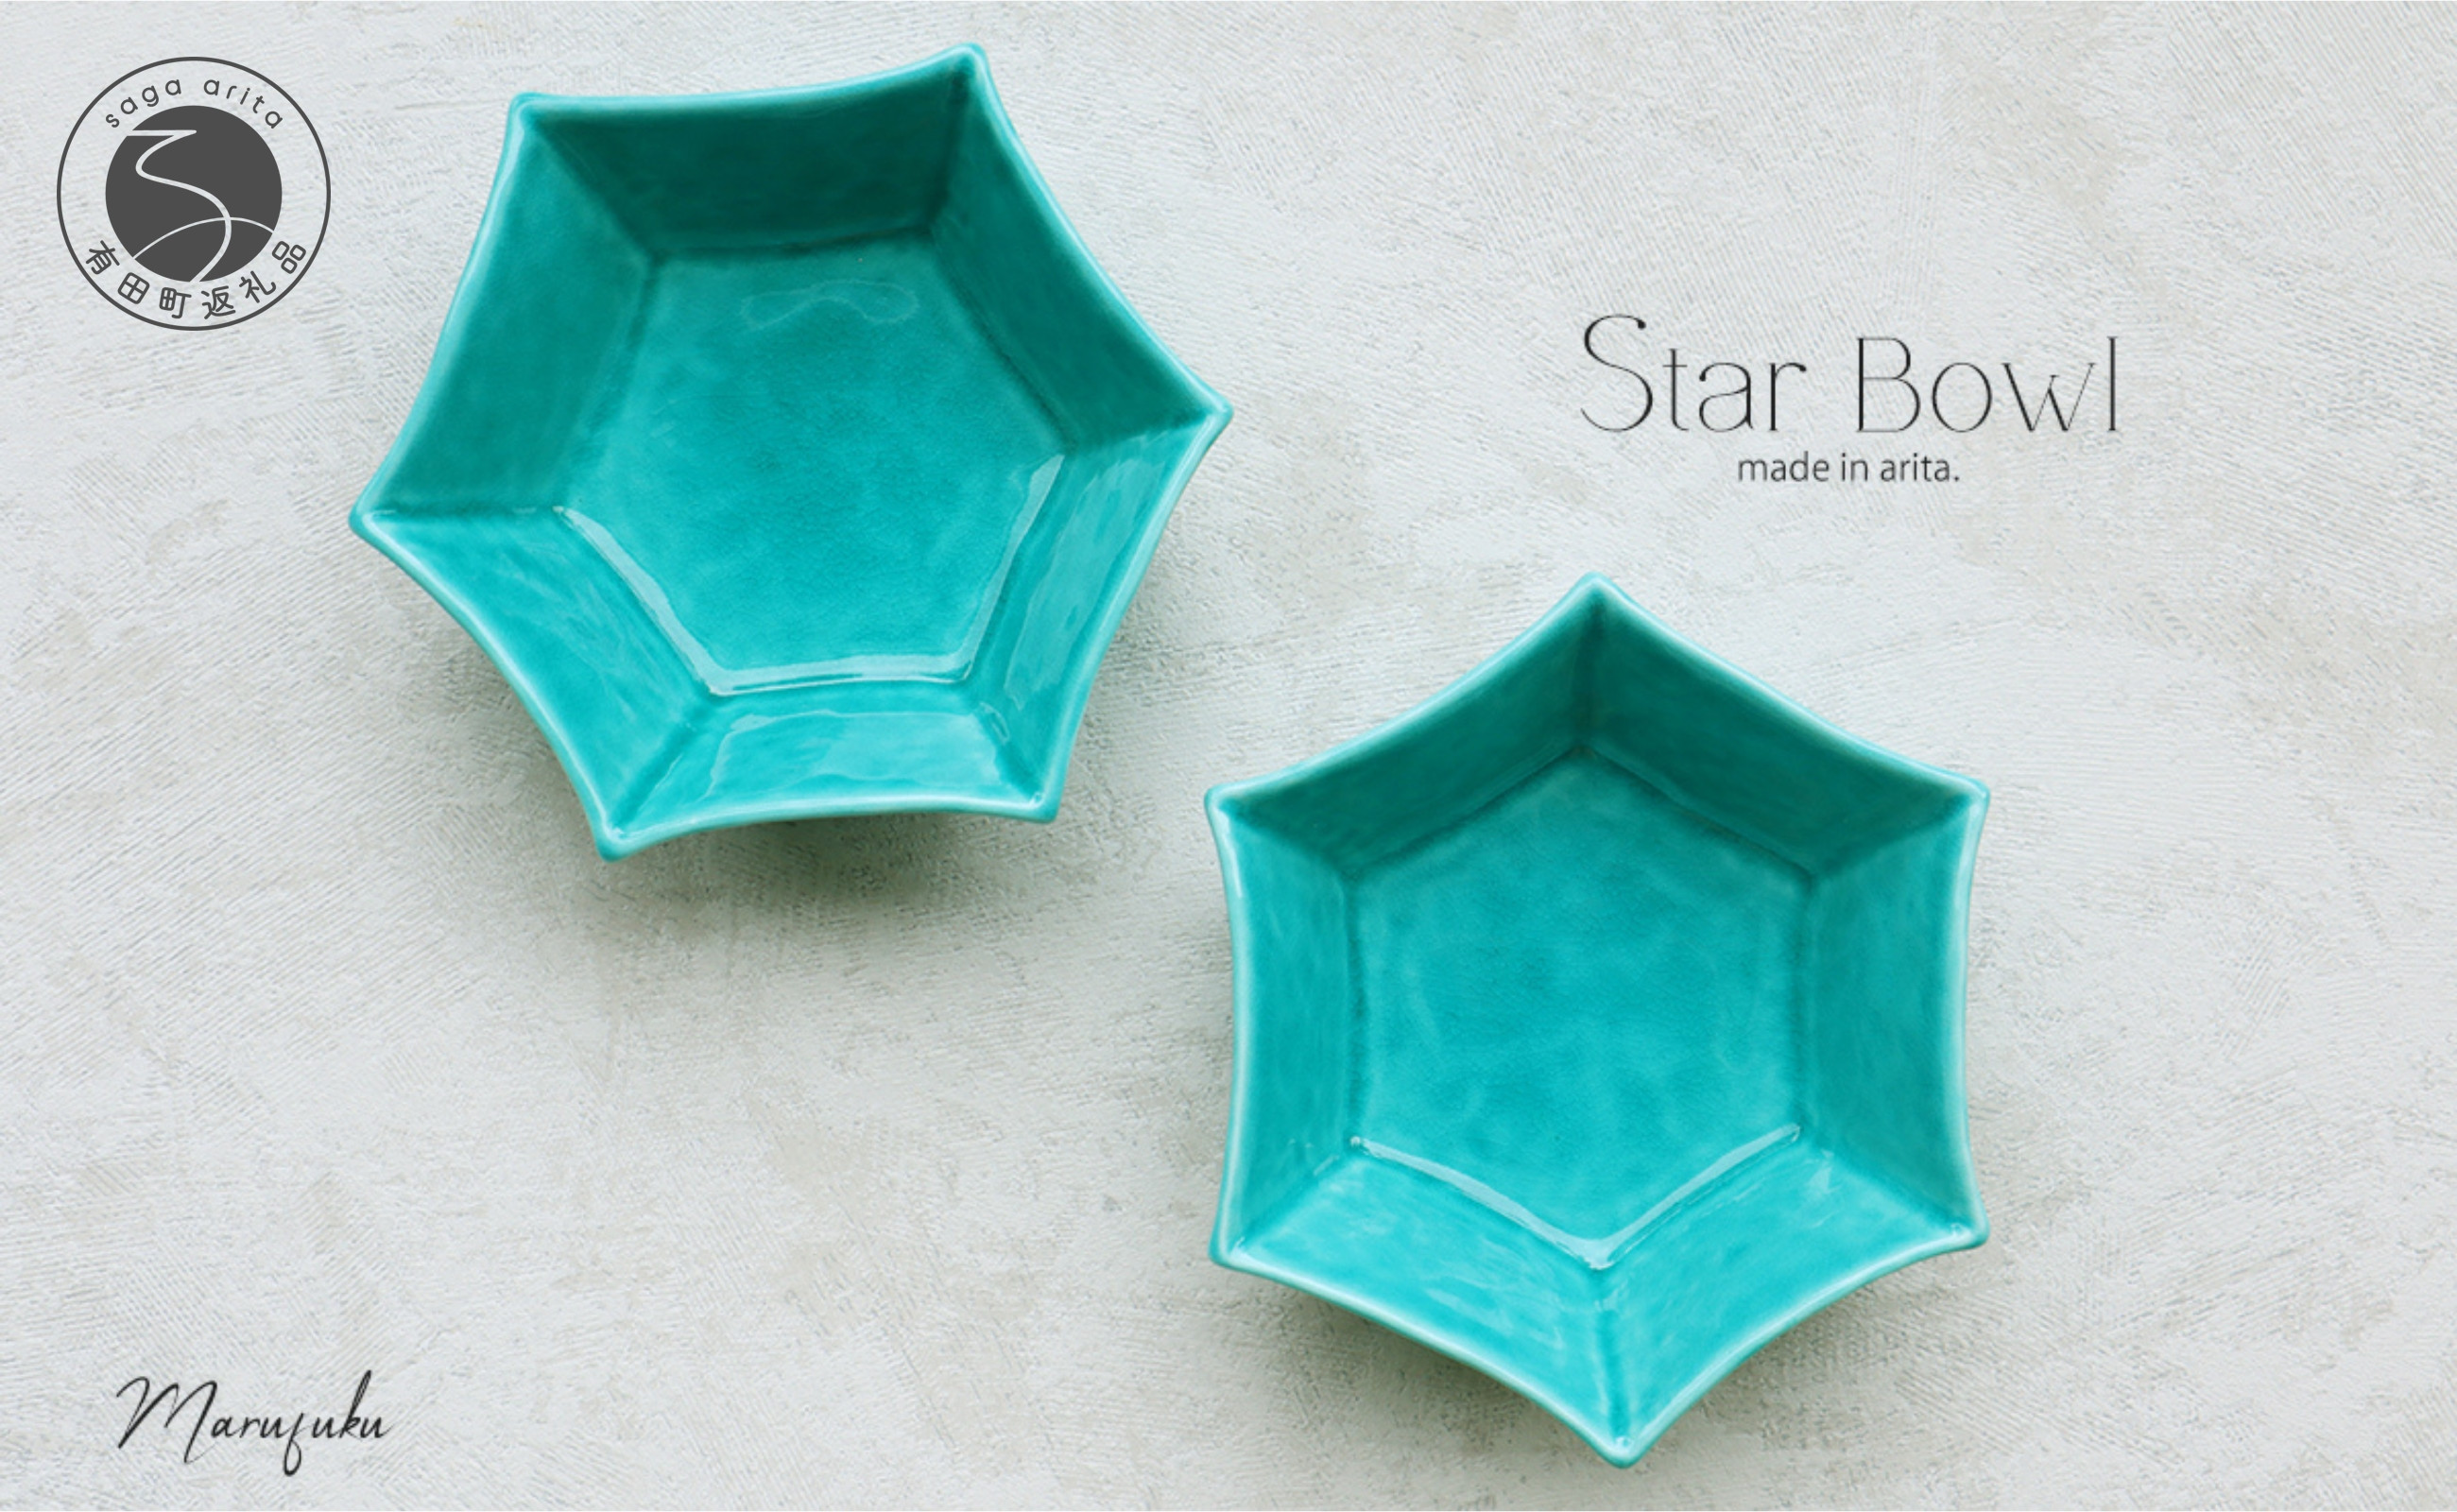 
【まるふくオリジナル】有田焼 Star Bowl ターコイズブルー 2個セット 青 ブルー 夏の器 小鉢 中鉢 スター 星 ペア A18-74
